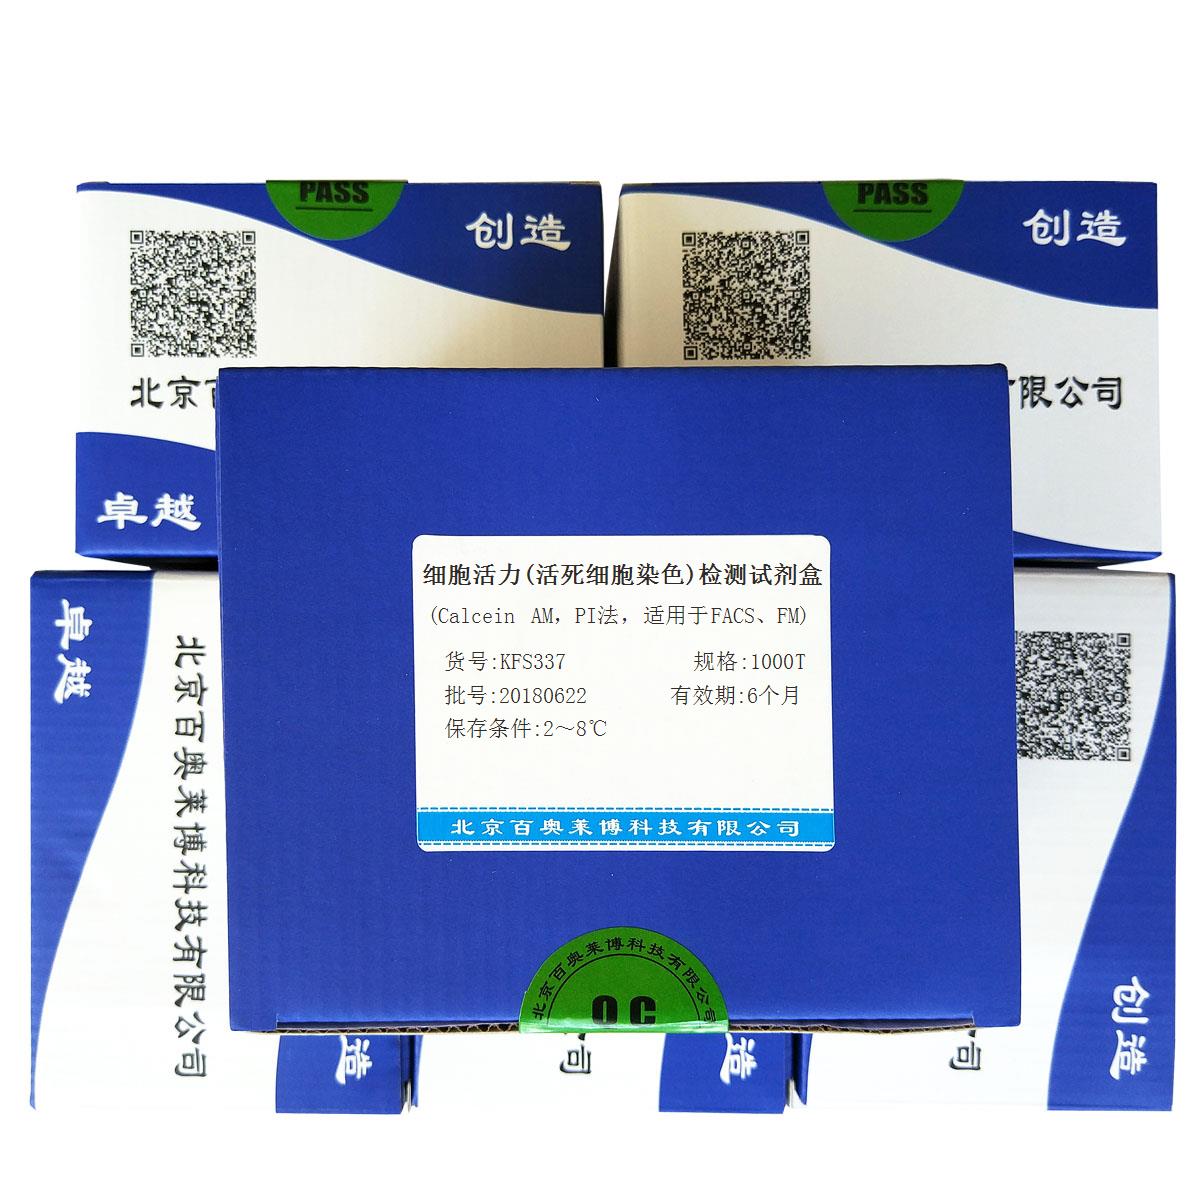 北京细胞活力(活死细胞染色)检测试剂盒(Calcein AM，PI法，适用于FACS、FM)多少钱